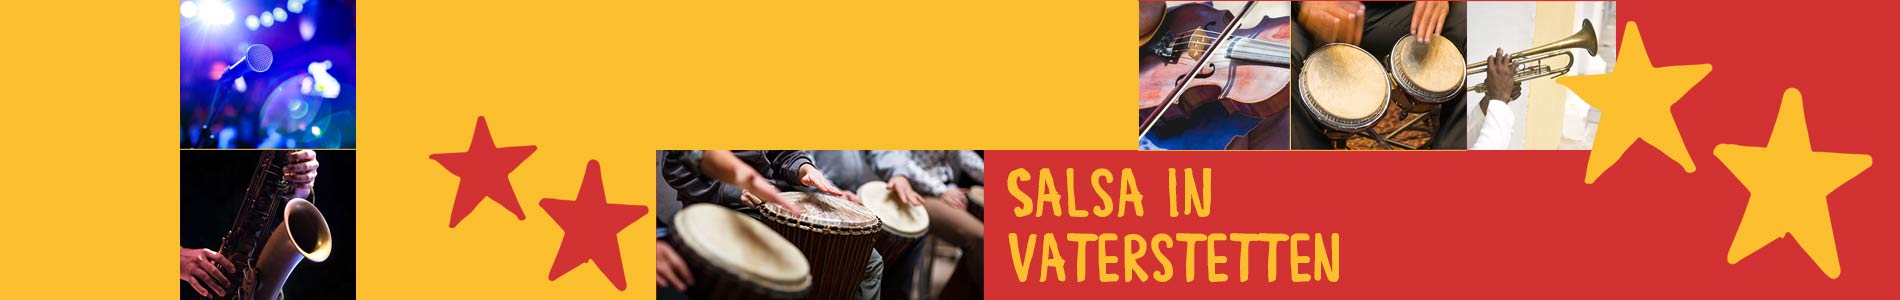 Salsa in Vaterstetten – Salsa lernen und tanzen, Tanzkurse, Partys, Veranstaltungen